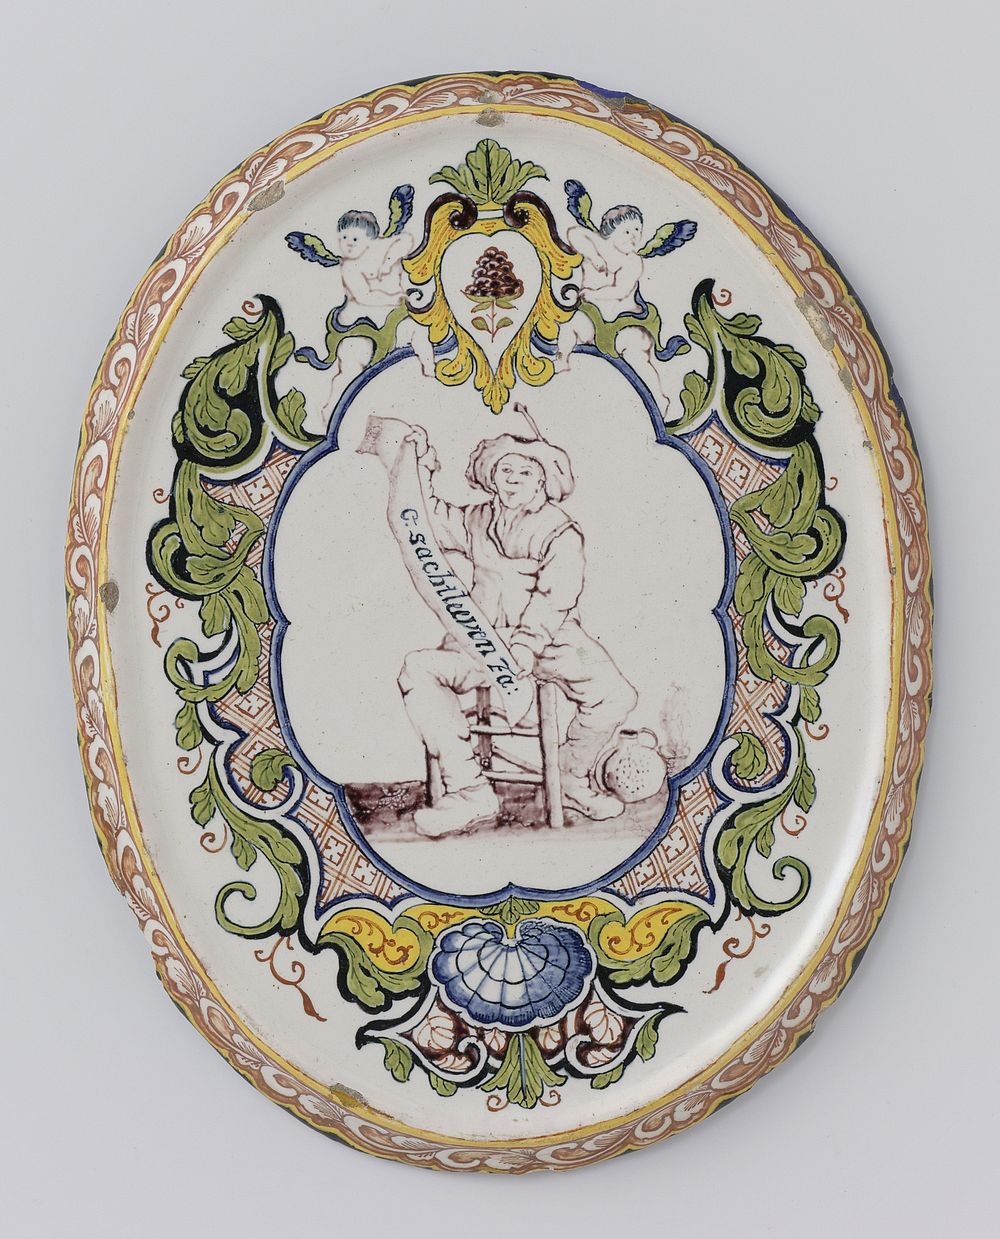 Plaat, ovaal, veelkleurig beschilderd met een boer zittend binnen lambrequinrand en onderschrift: G.SACHTLEEVEN (c. 1750 -…